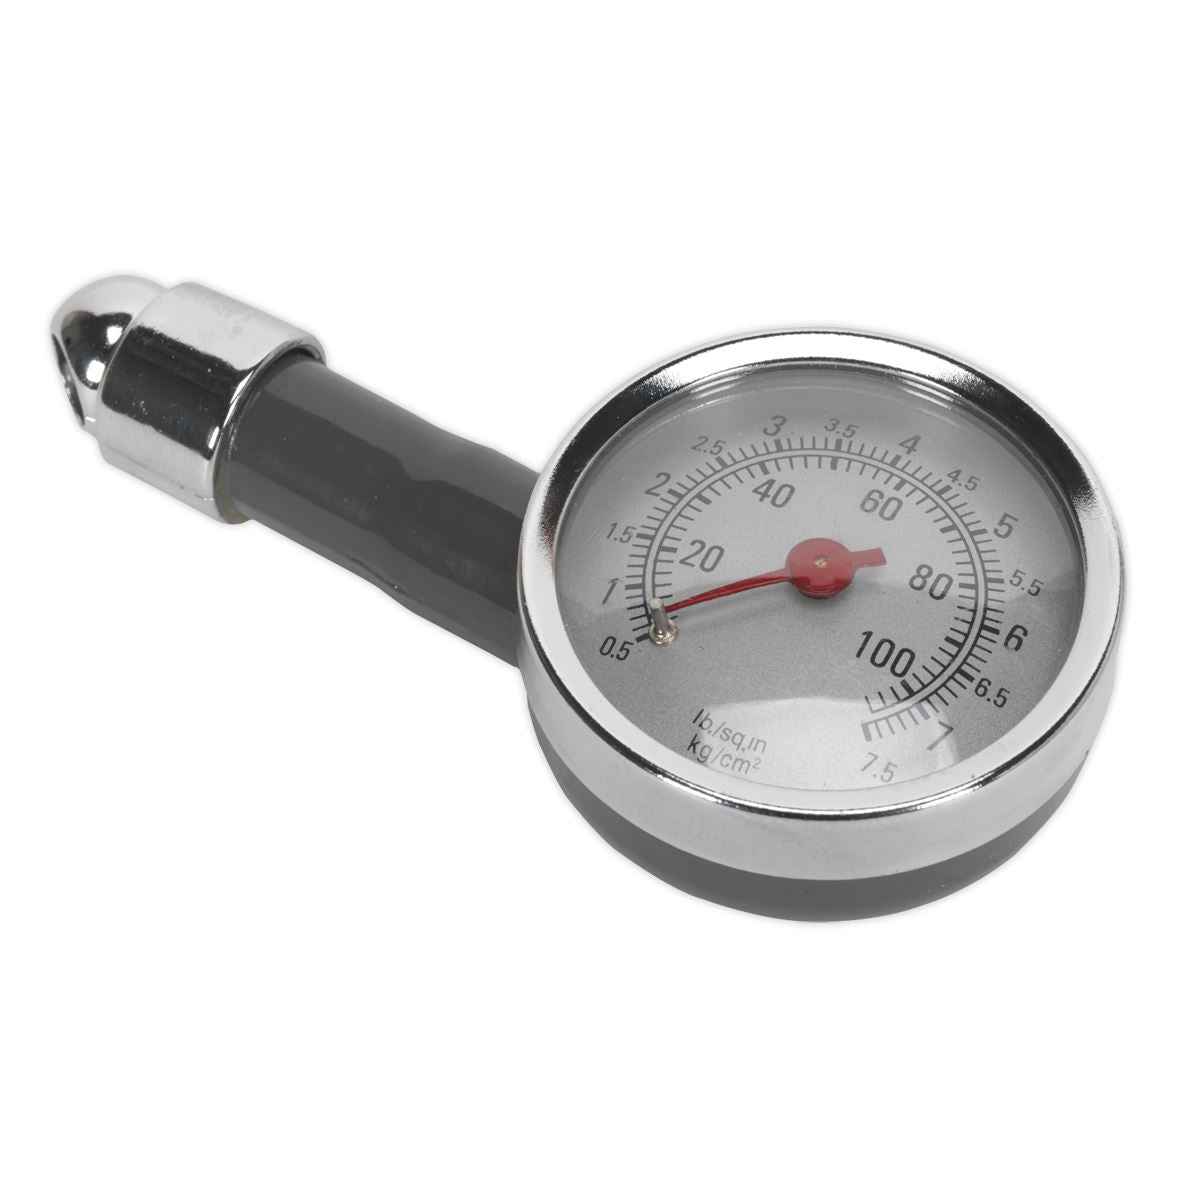 Sealey Dial Type Pressure Gauge 0-100psi